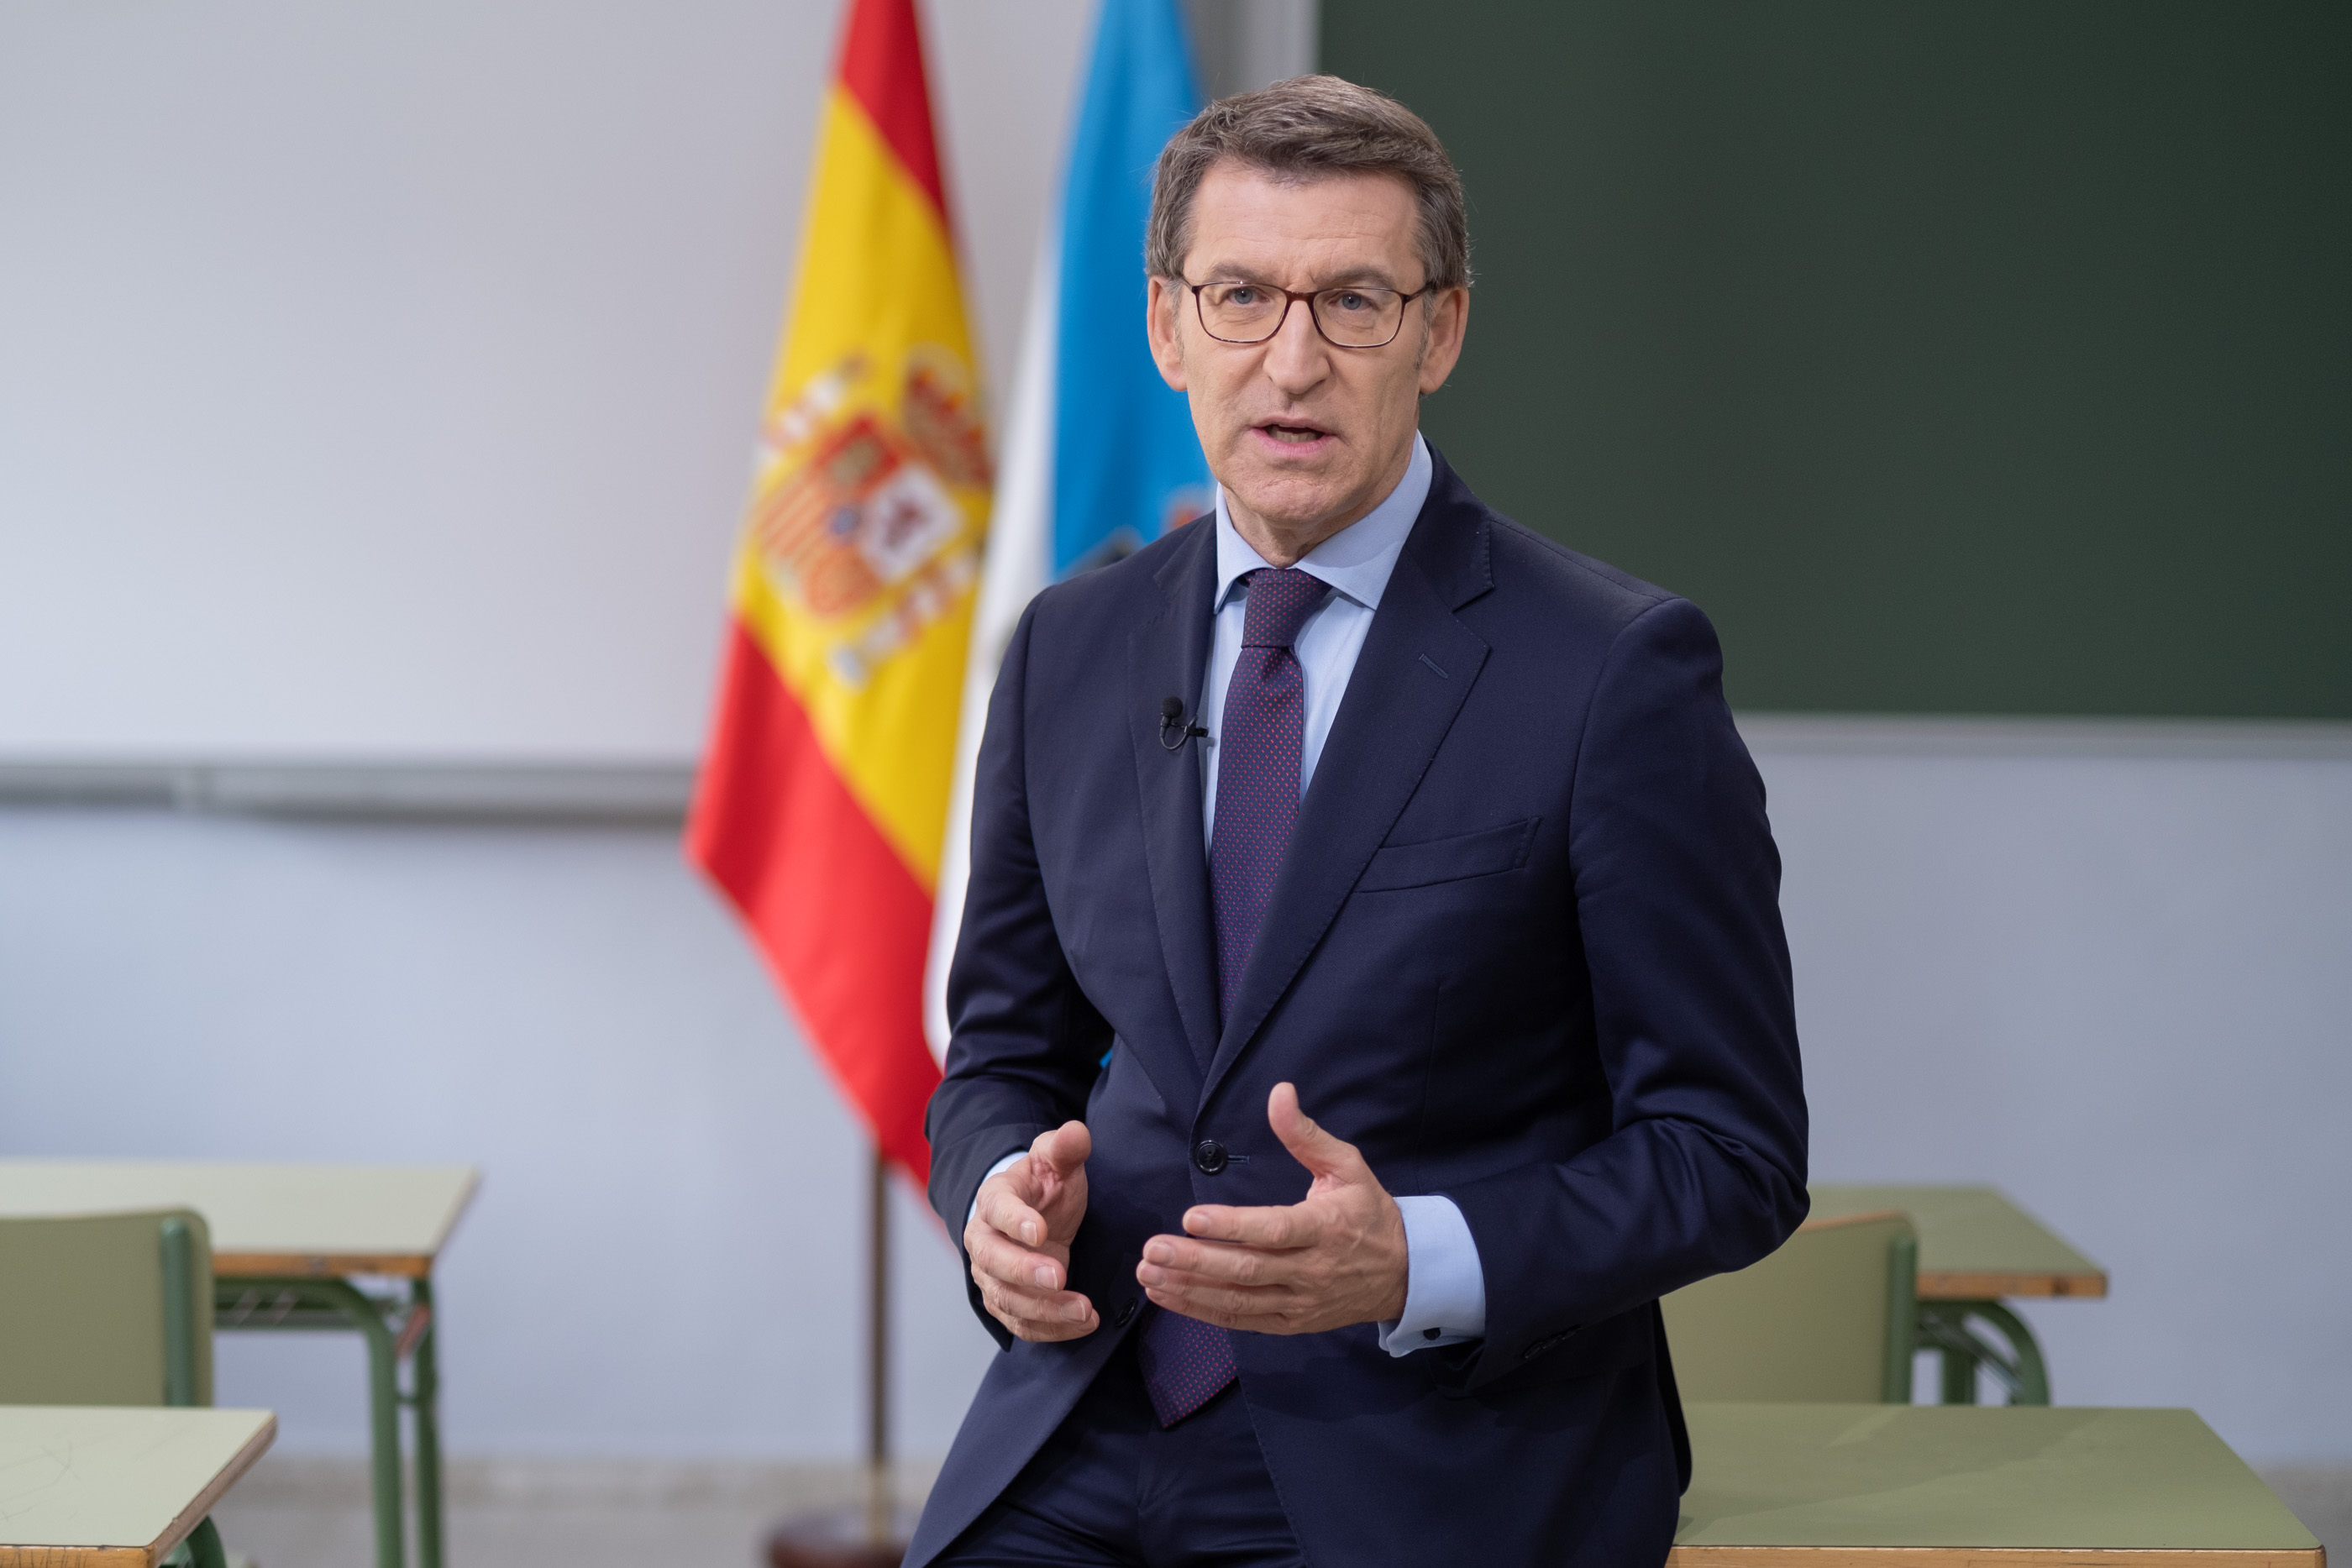 Feijóo celebra adelanto electoral anunciado por Sánchez: “Los españoles han dicho basta, hasta aquí hemos llegado” (VIDEO)